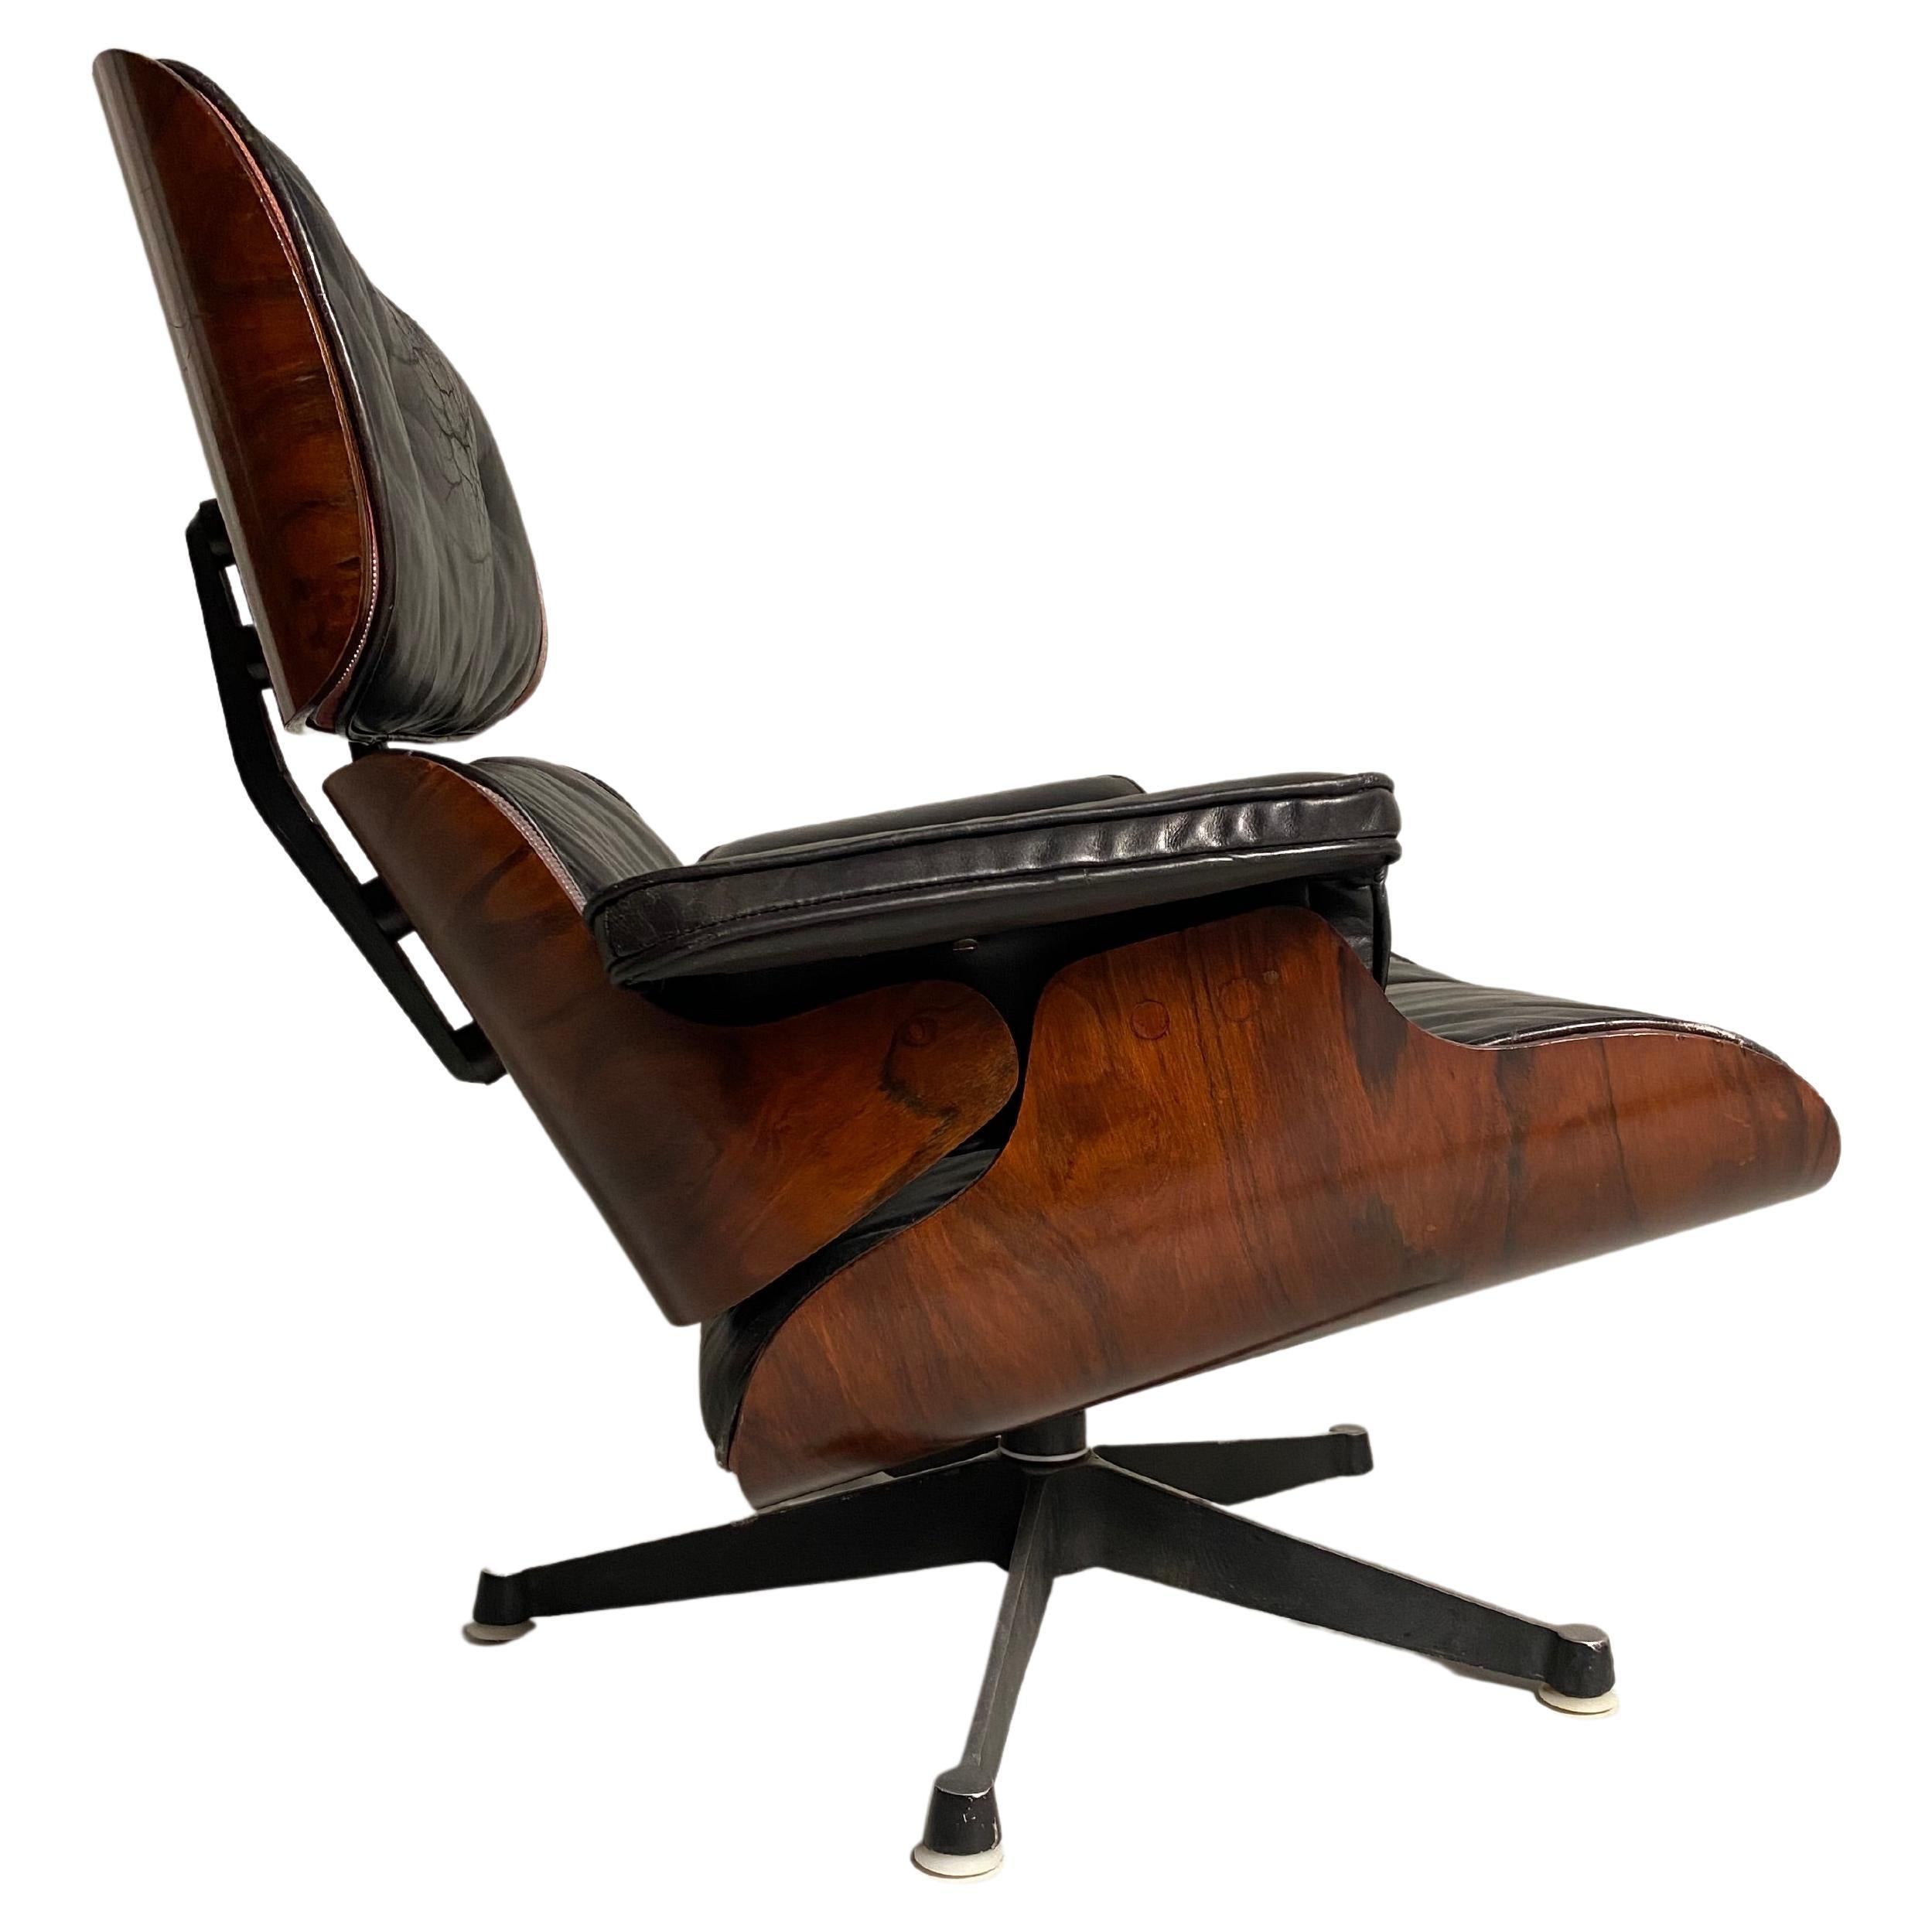 Die Eames Lounge ist wahrscheinlich einer der berühmtesten Sesselentwürfe der Welt. Das Designerpaar Charles und Ray Eames entwarf  es 1956 für Herman Miller. Es war der erste Stuhl, den das Ehepaar für einen gehobenen Markt entwarf. Einige dieser